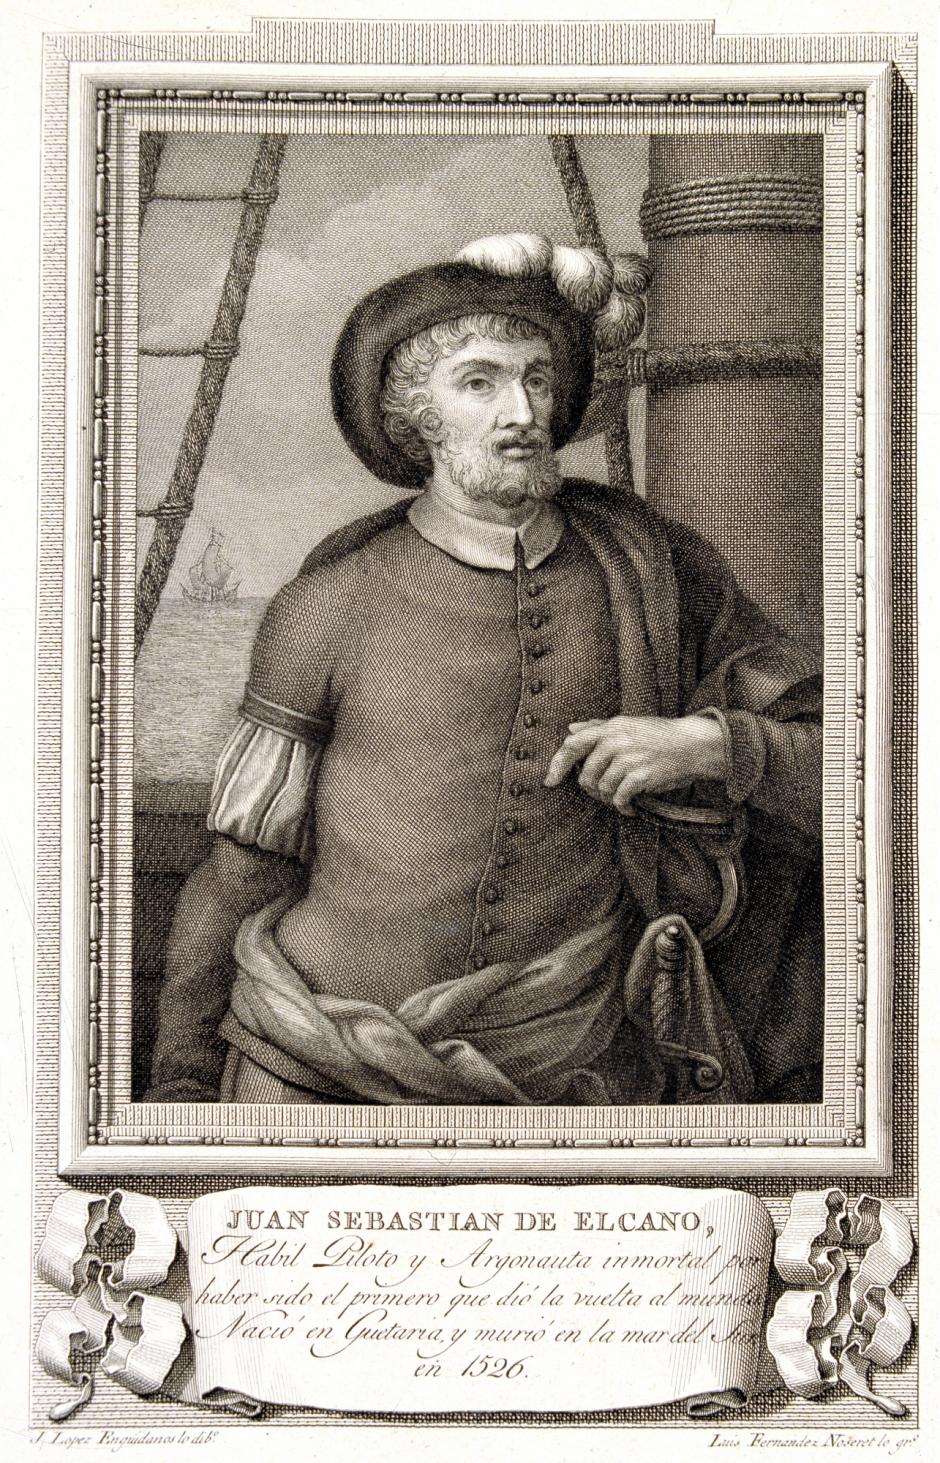 ELCANO, JUAN SEBASTIAN
NAVEGANTE ESPAÑOL. GUETARIA 1476-1526
GRABADO " VARONES ILUSTRES "